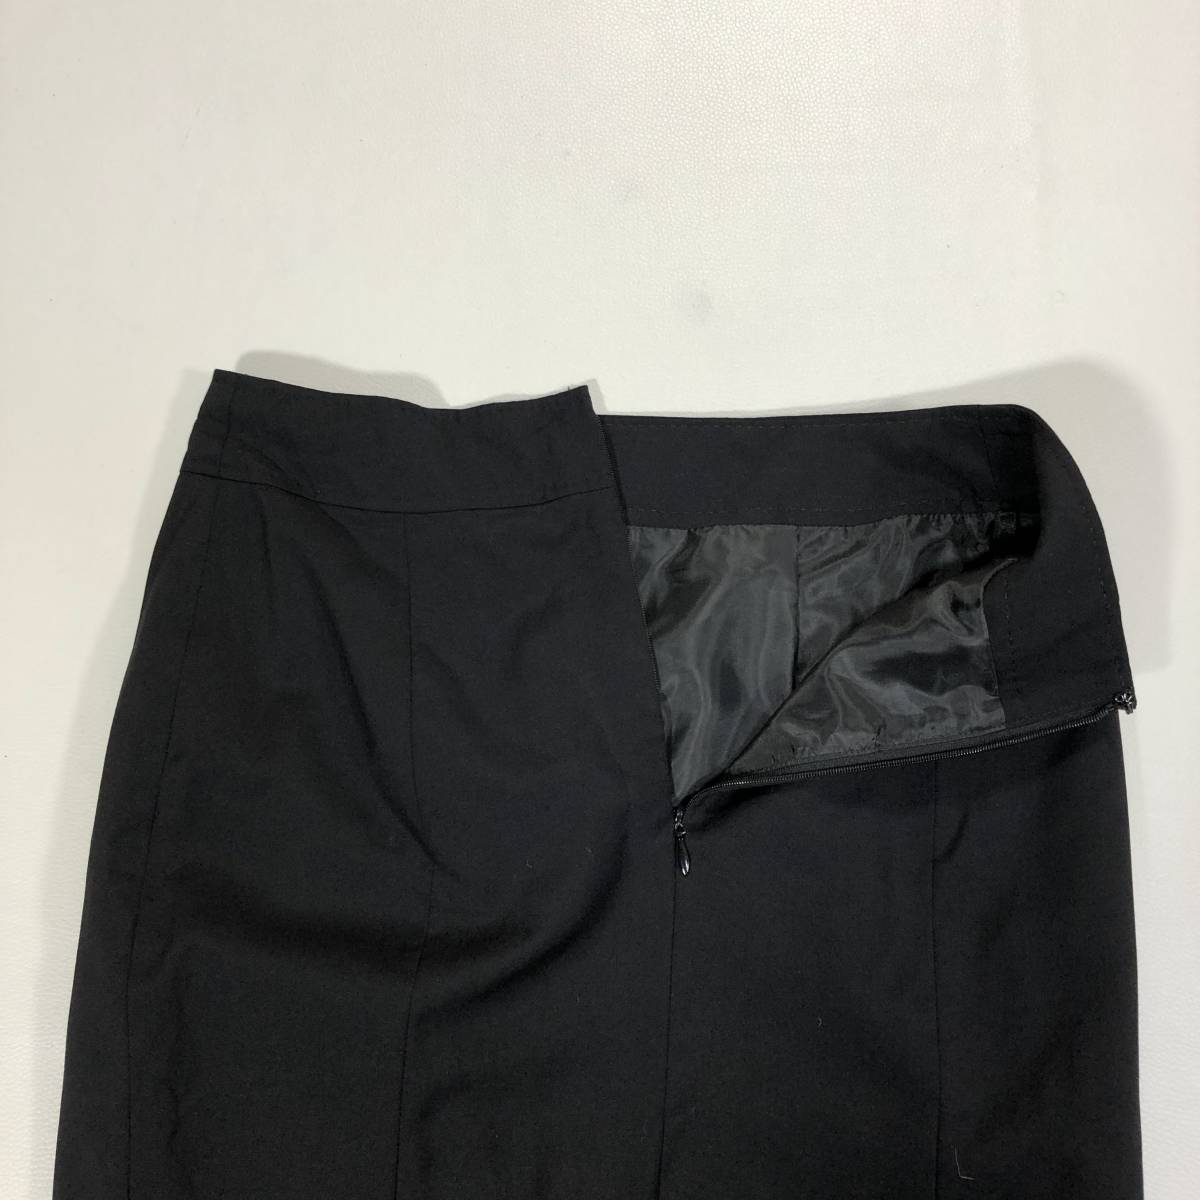 BUONA GIORNATA ボナジョルナータ スーツスカート セットアップ ブラック 黒 サイズM ひざ丈 シンプル ジャケット 胸ポケット G-3